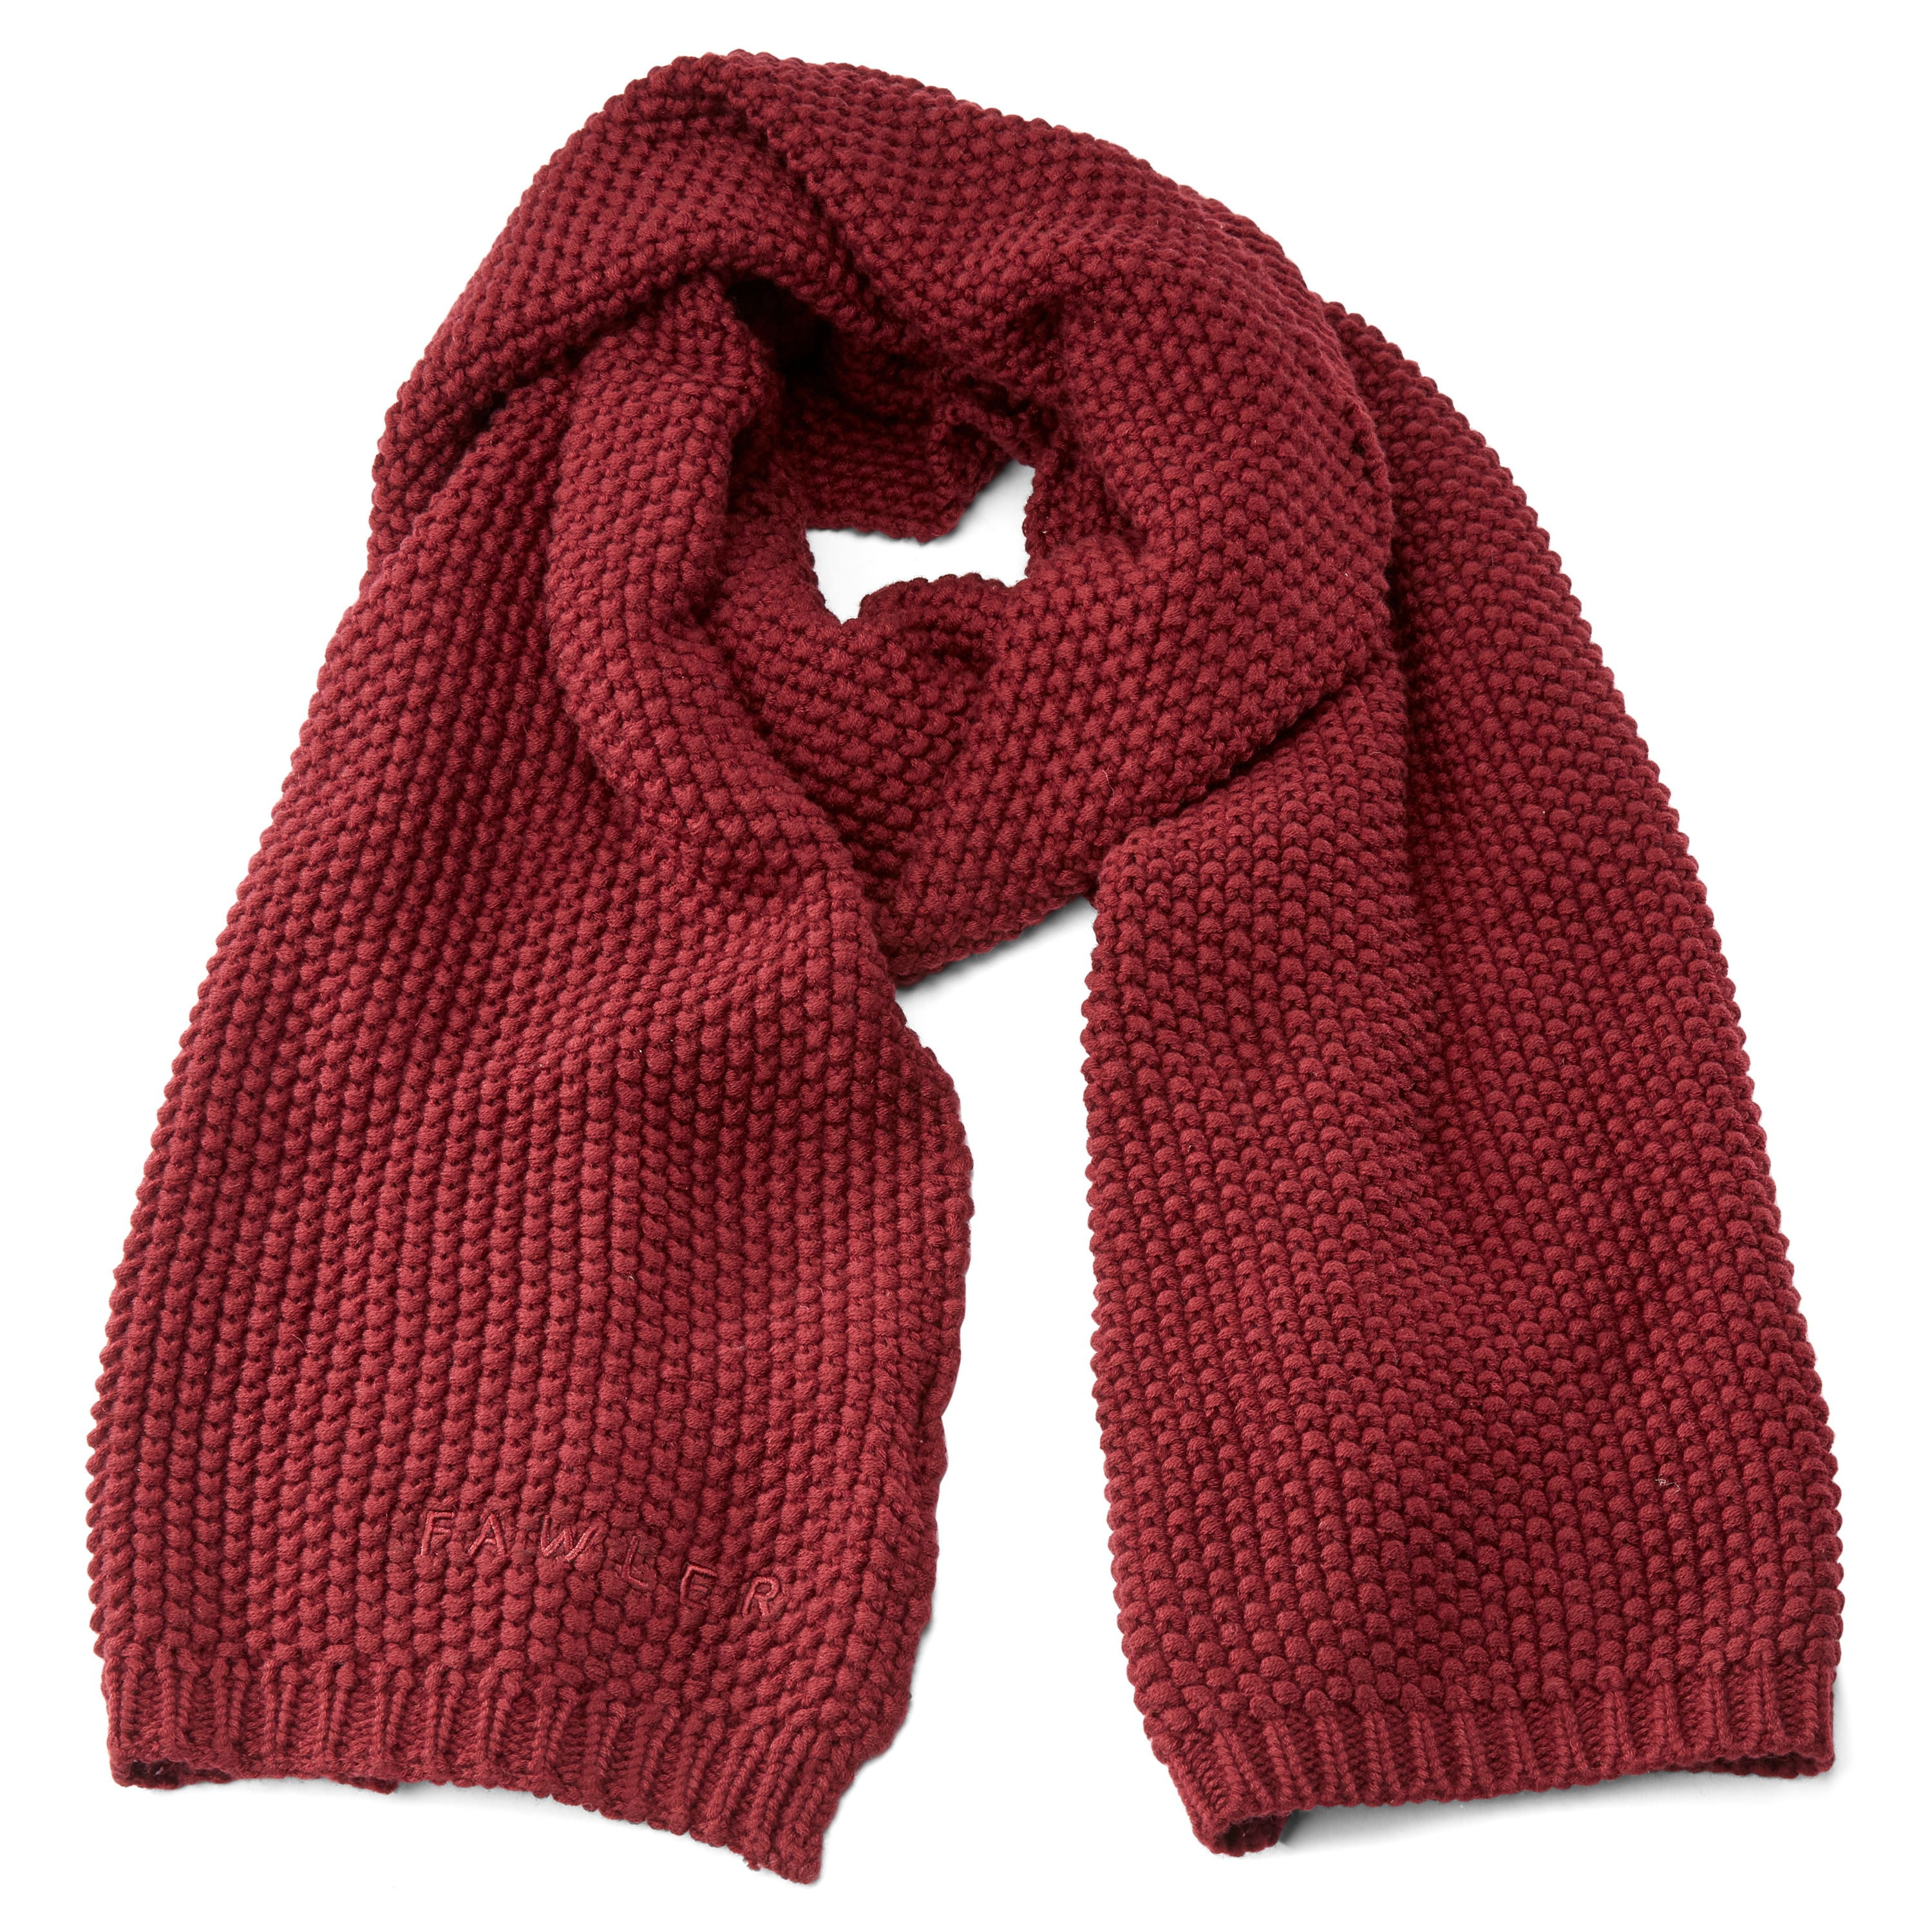 Las bufandas: ideas geniales para usarlas